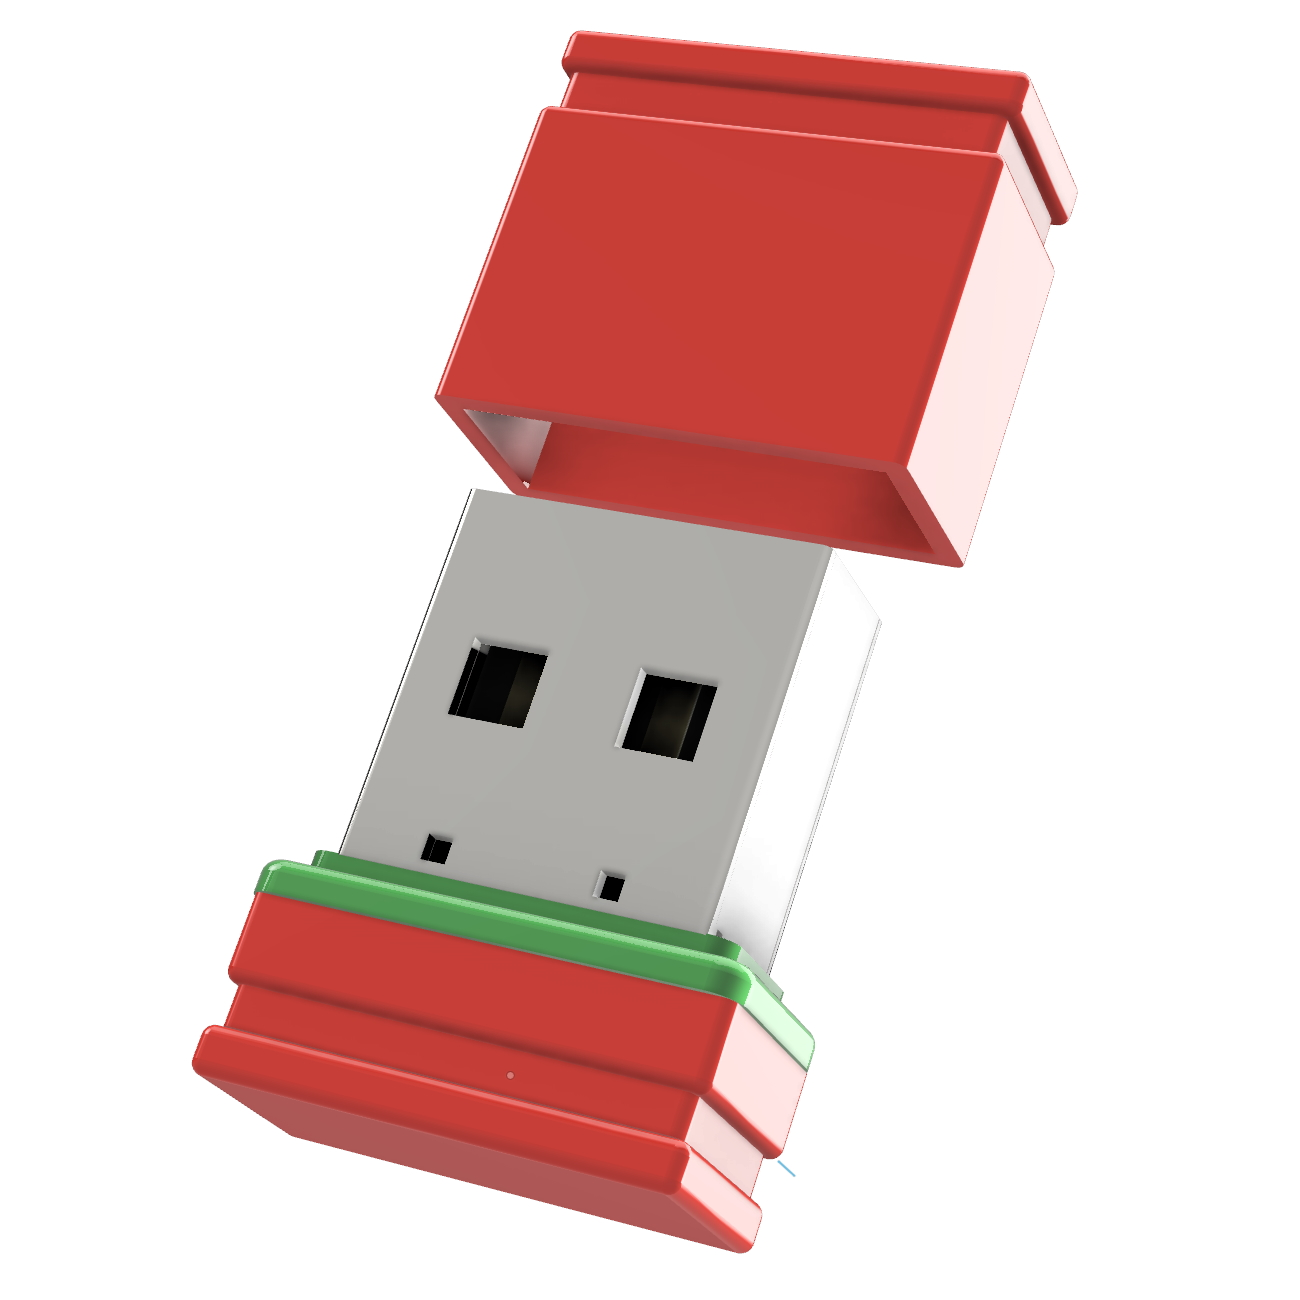 USB GERMANY ®ULTRA Mini 4 USB-Stick P1 (Rot/Grün, GB)